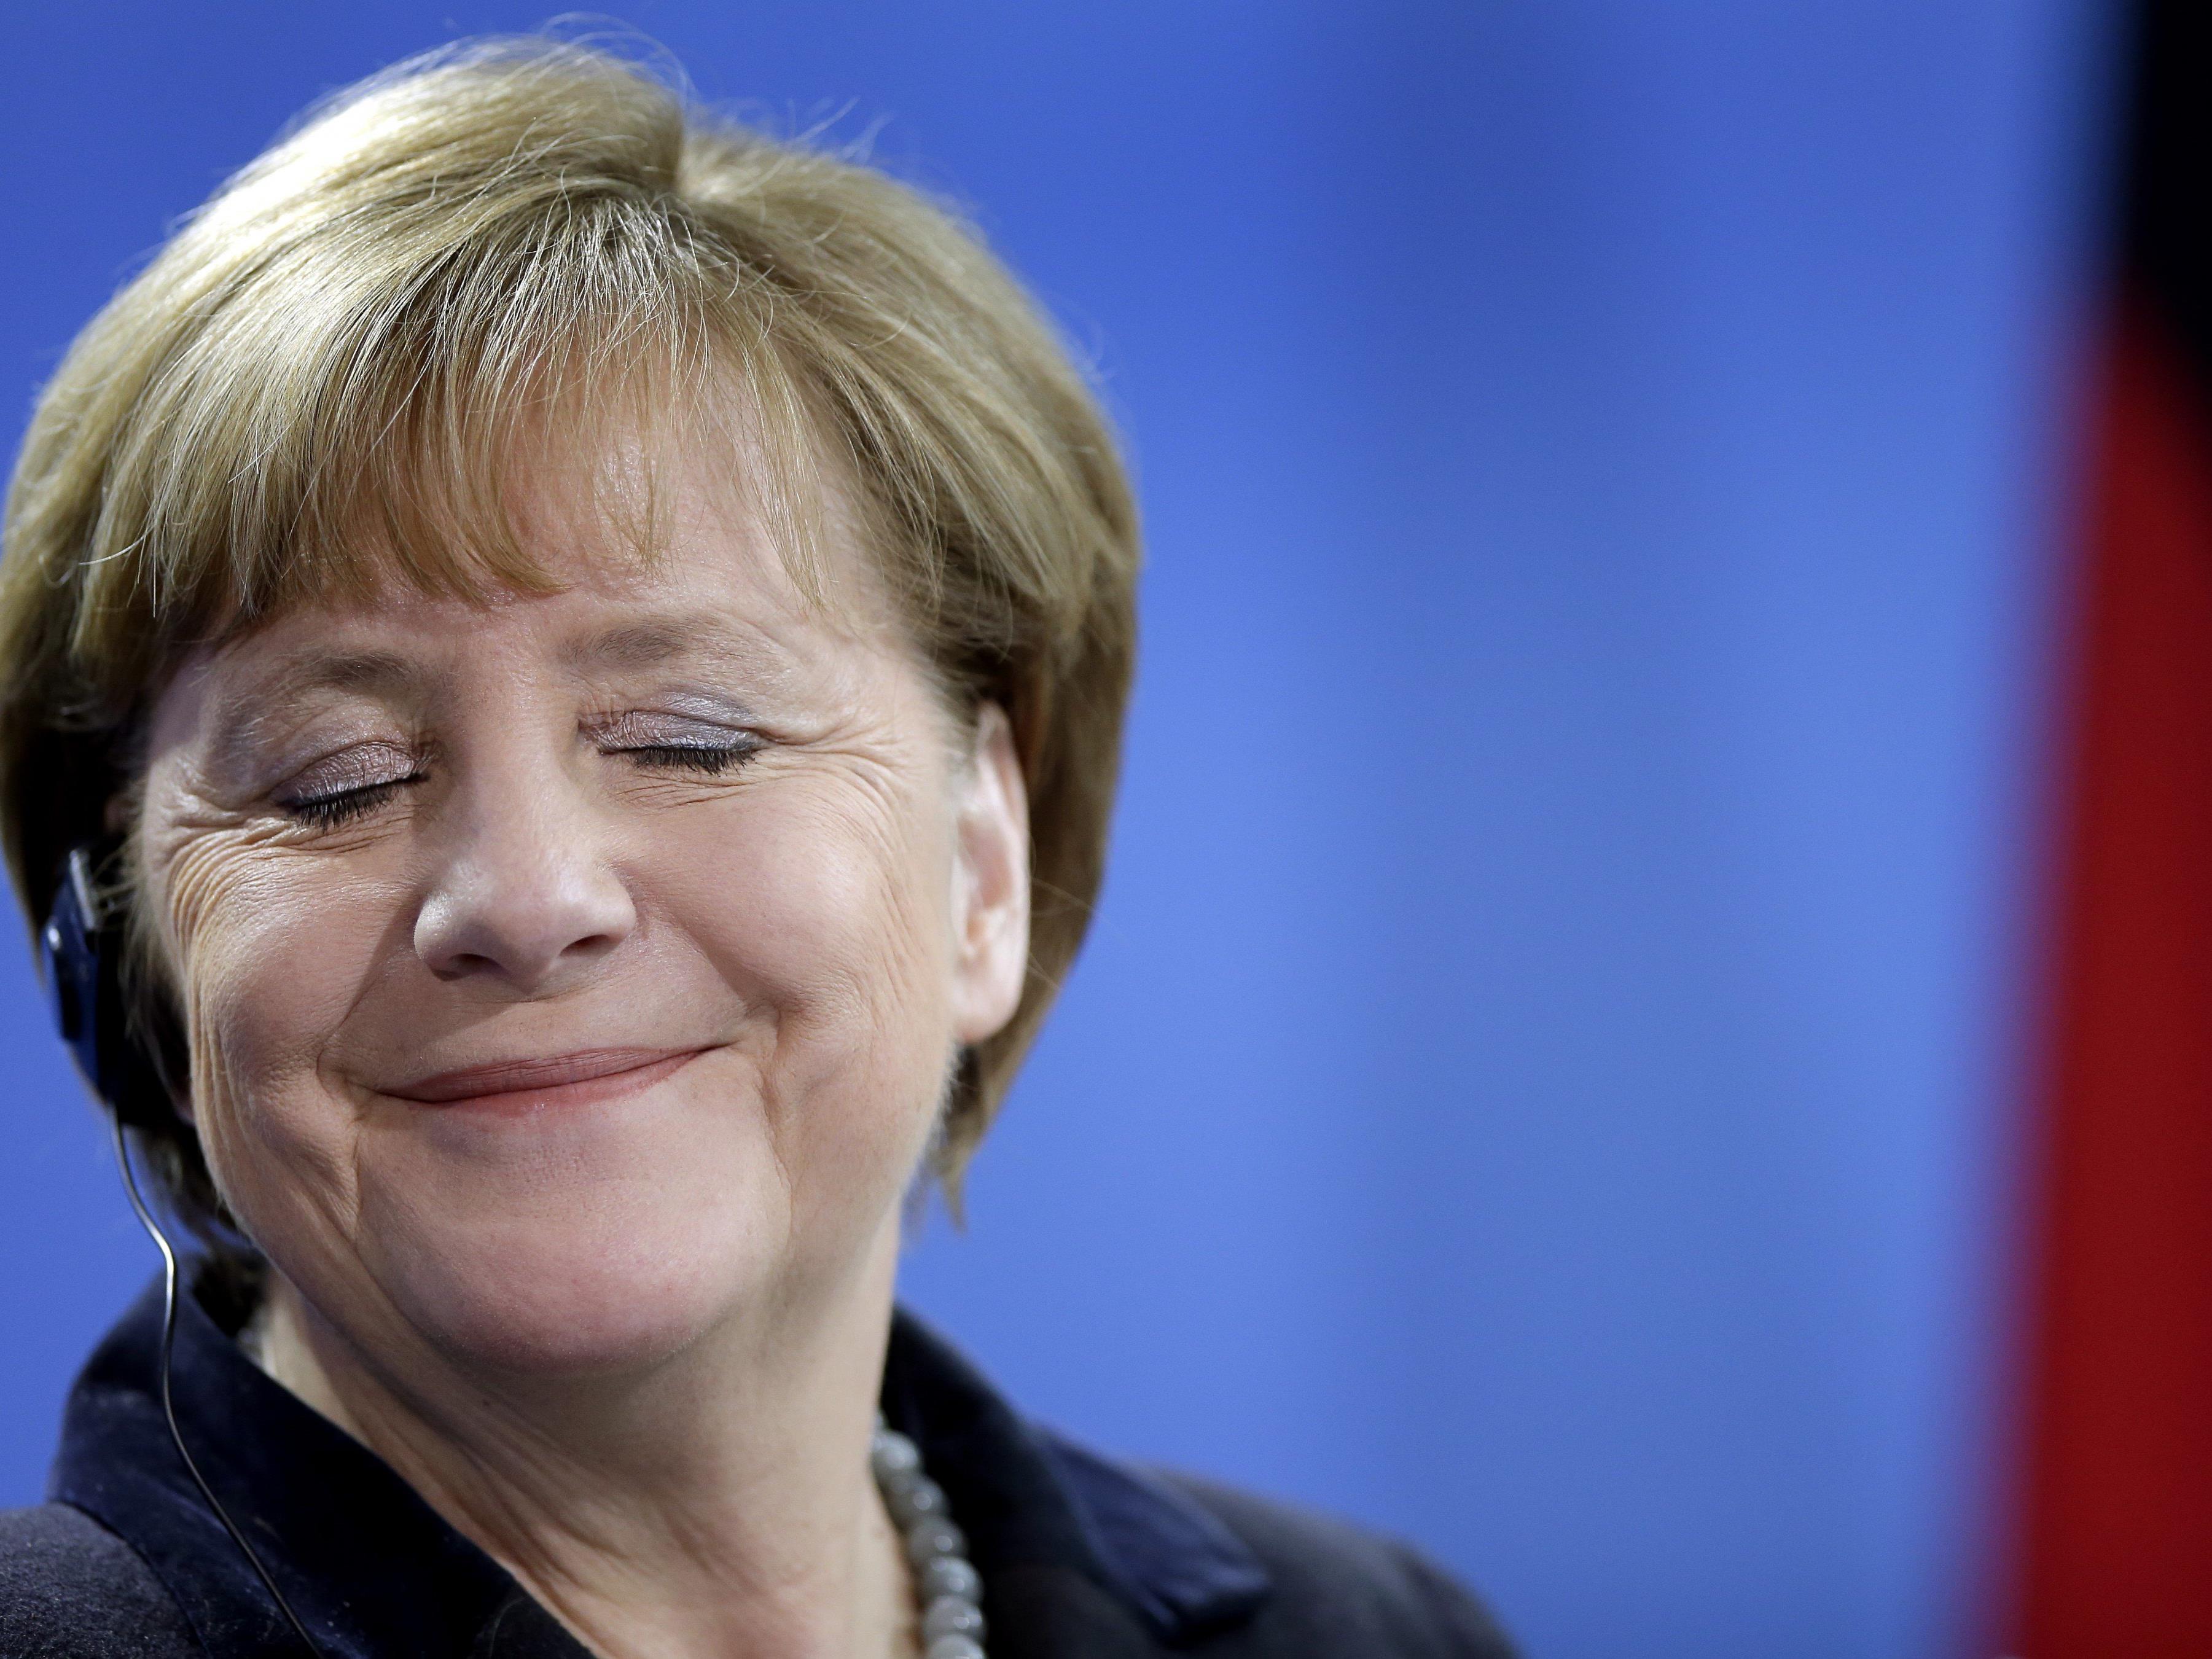 Erstes Kind von syrischem Paar heißt nun "Angela Merkel".